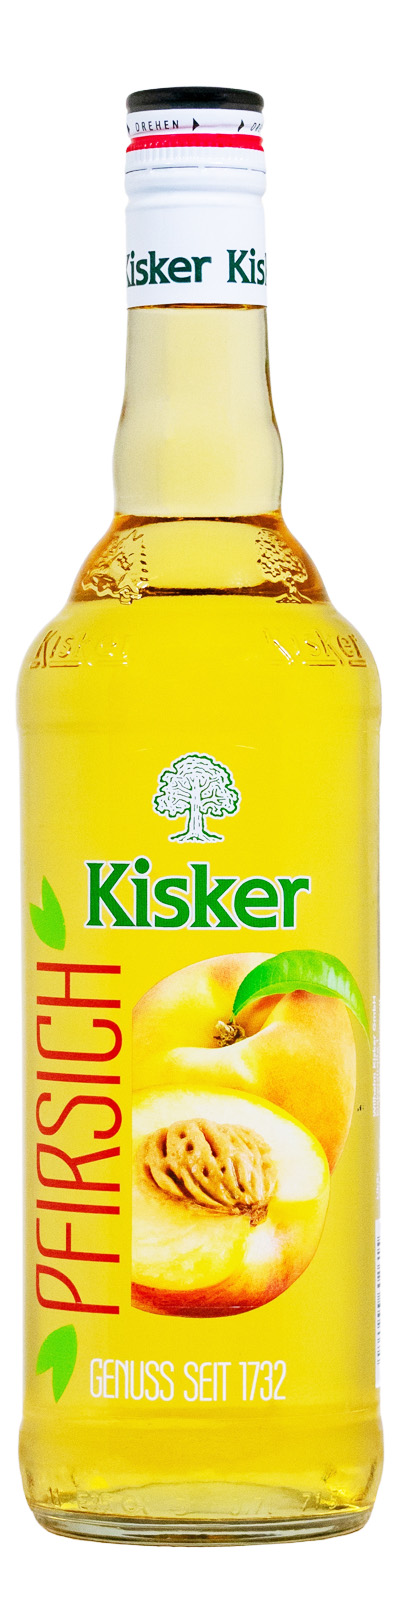 Kisker Pfirsich Likör - 0,7L 20% vol